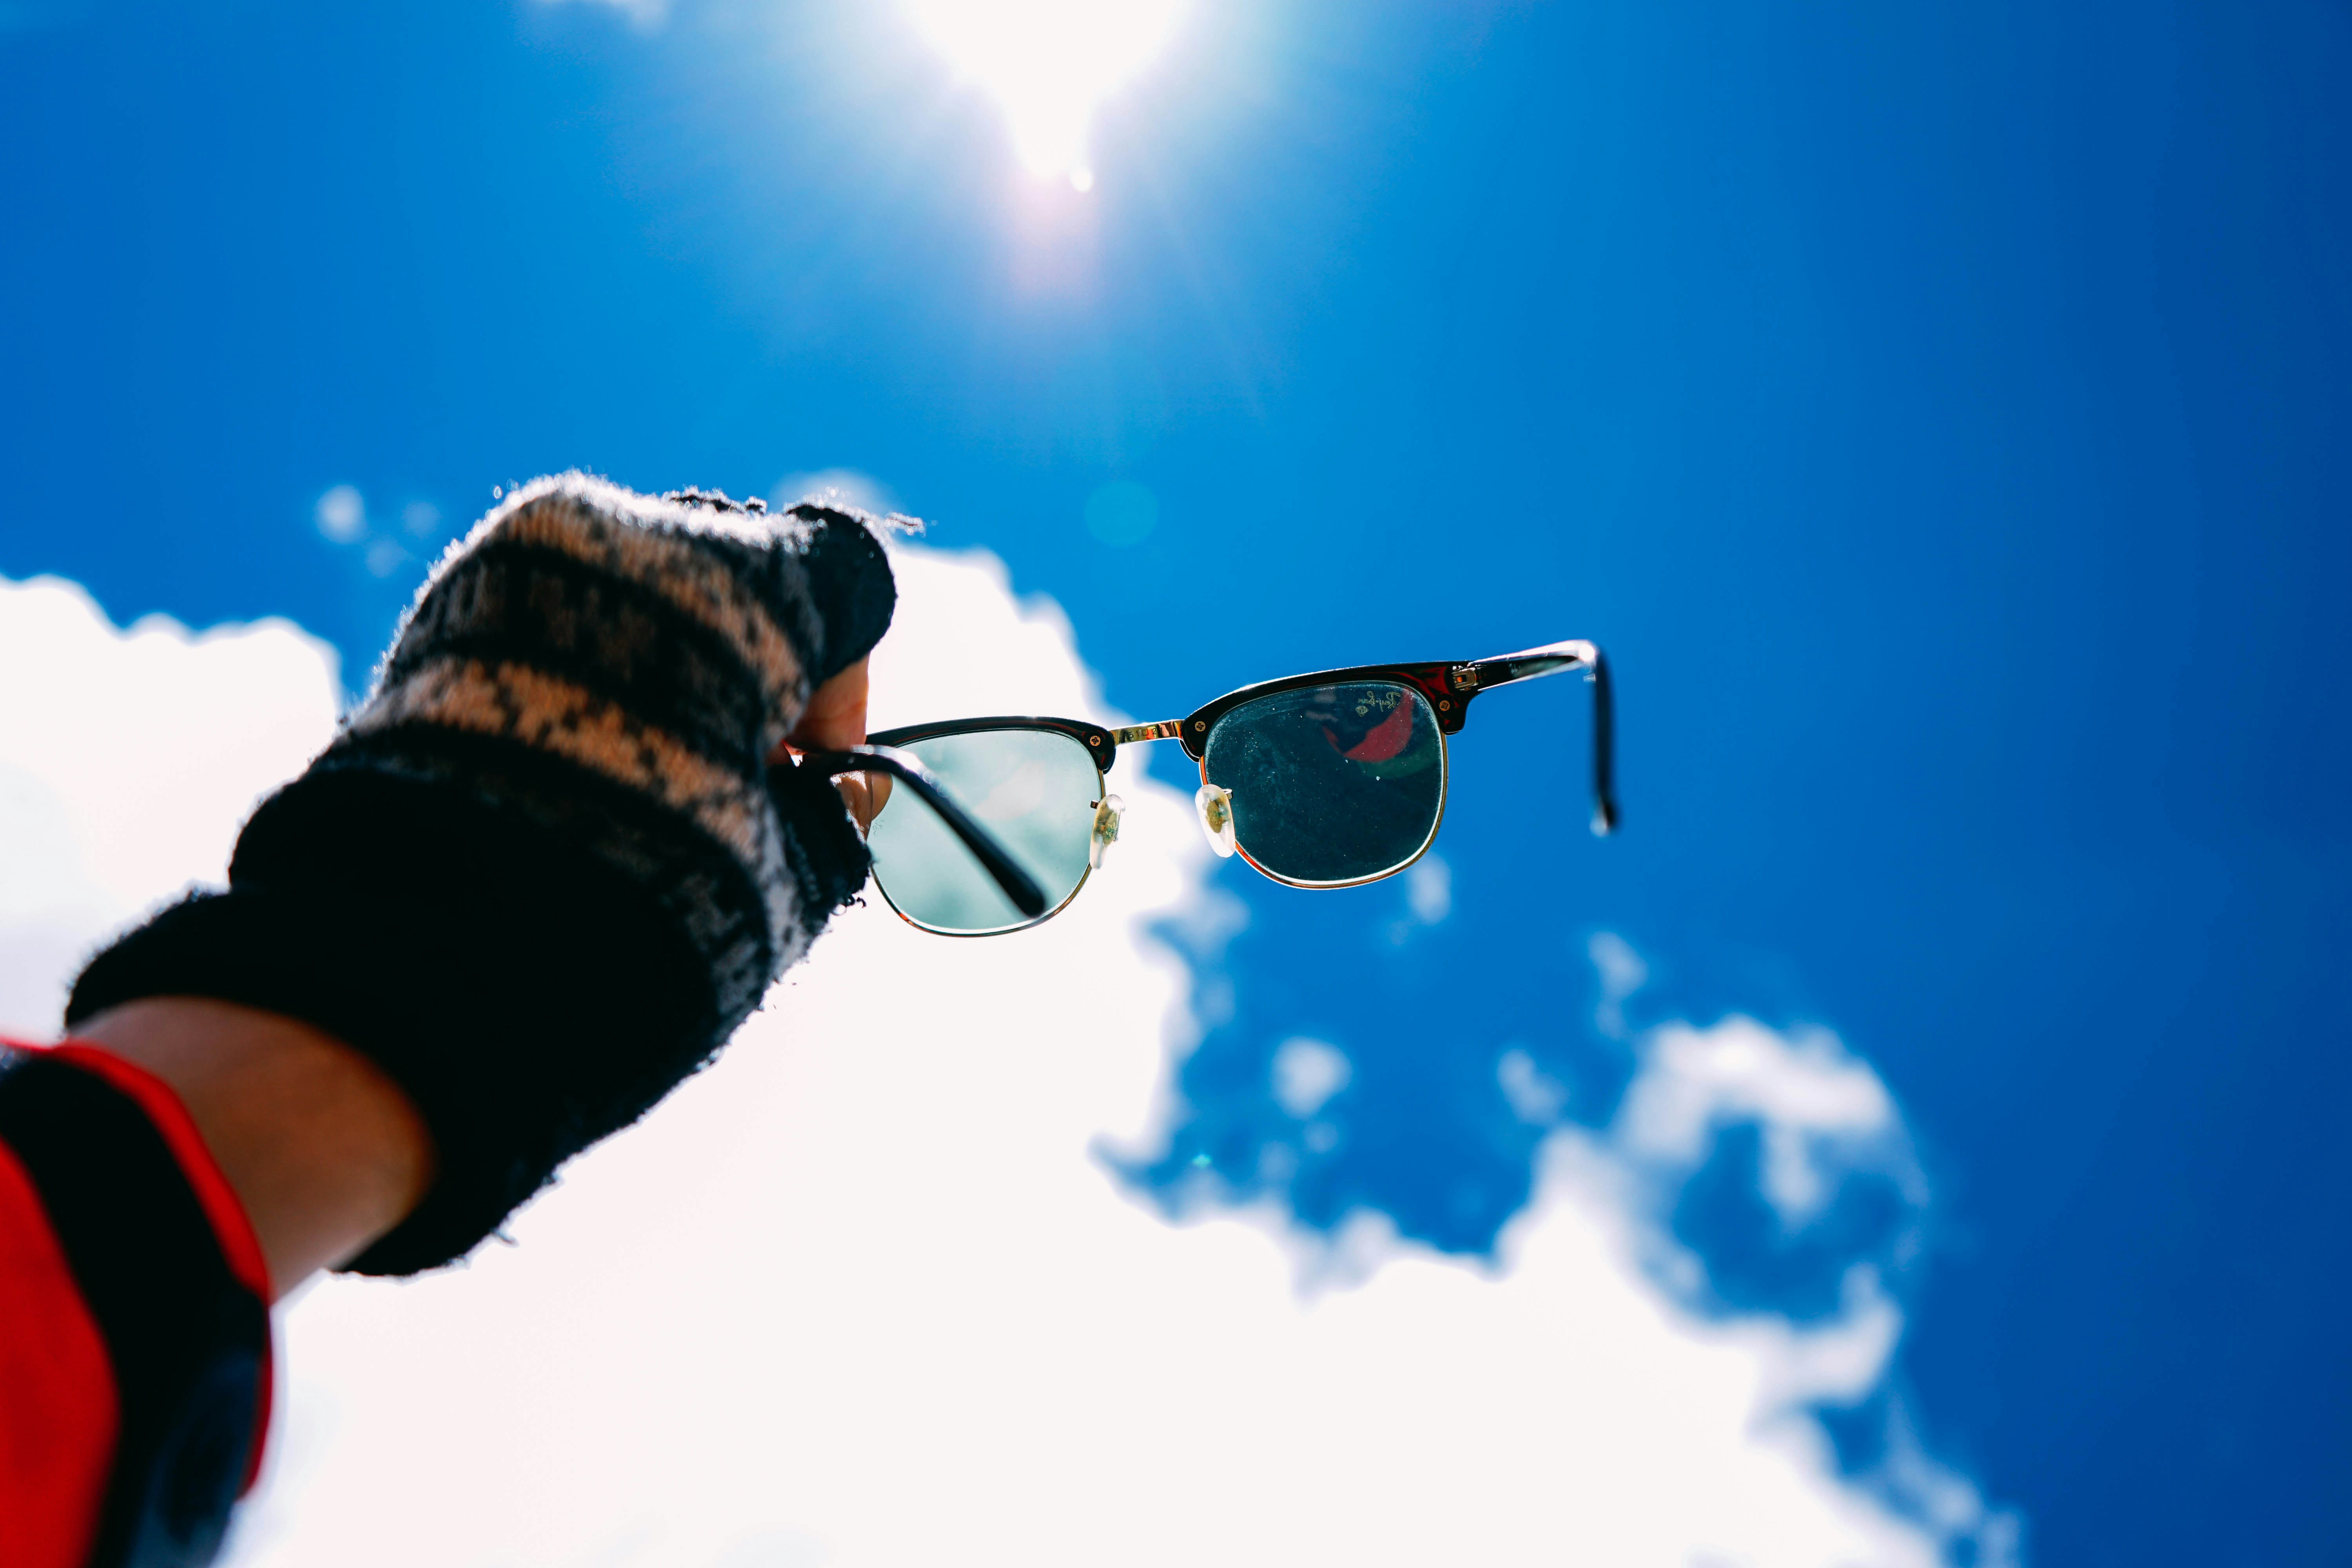 2019 cheap real ray ban sunglasses free shiping